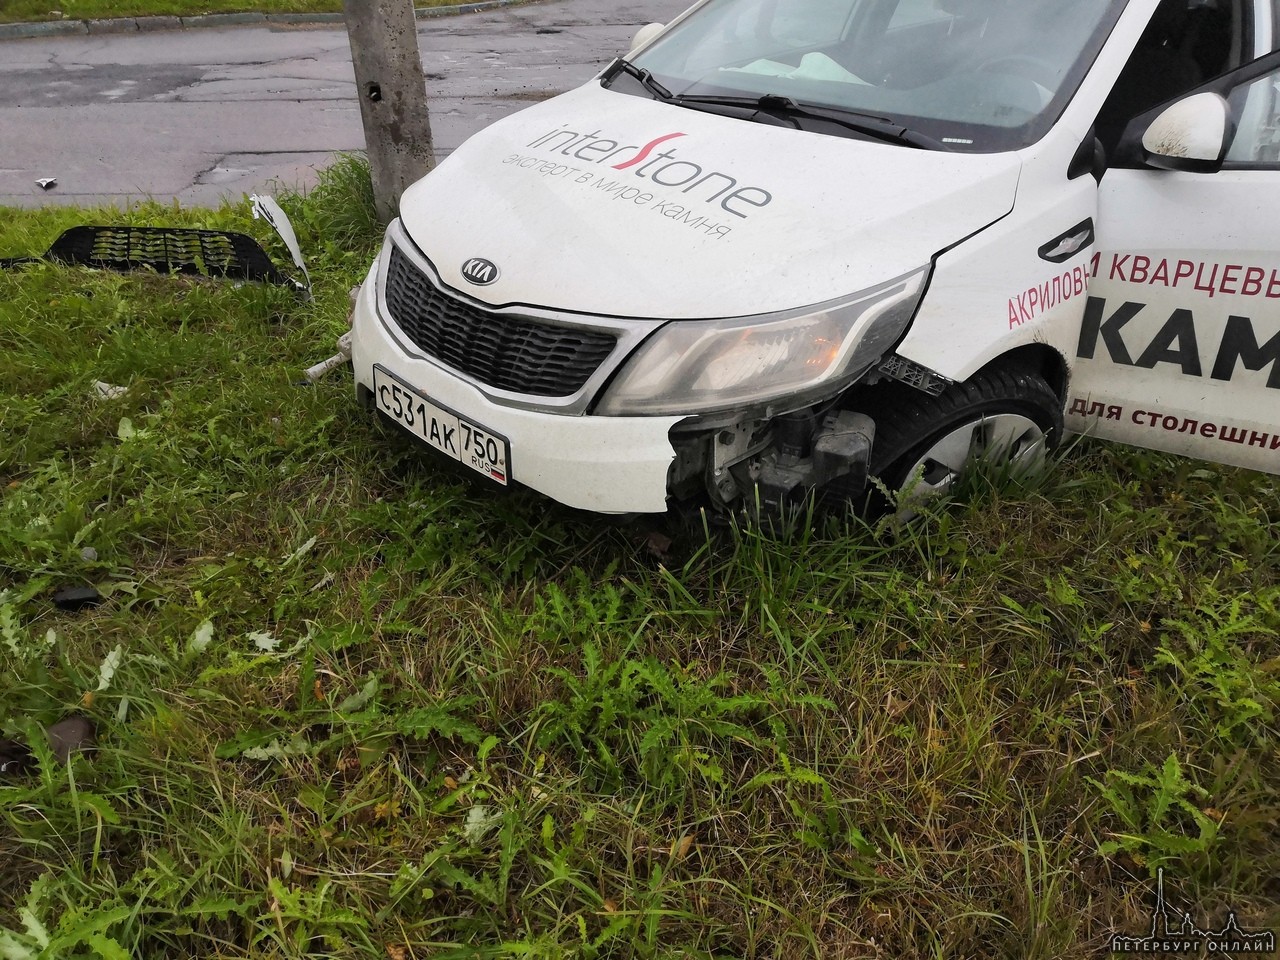 9 октября, напротив АЗС "Фаэтон" в 13.20 на Ириновском проспекте произошла авария Водитель Suzuki ...